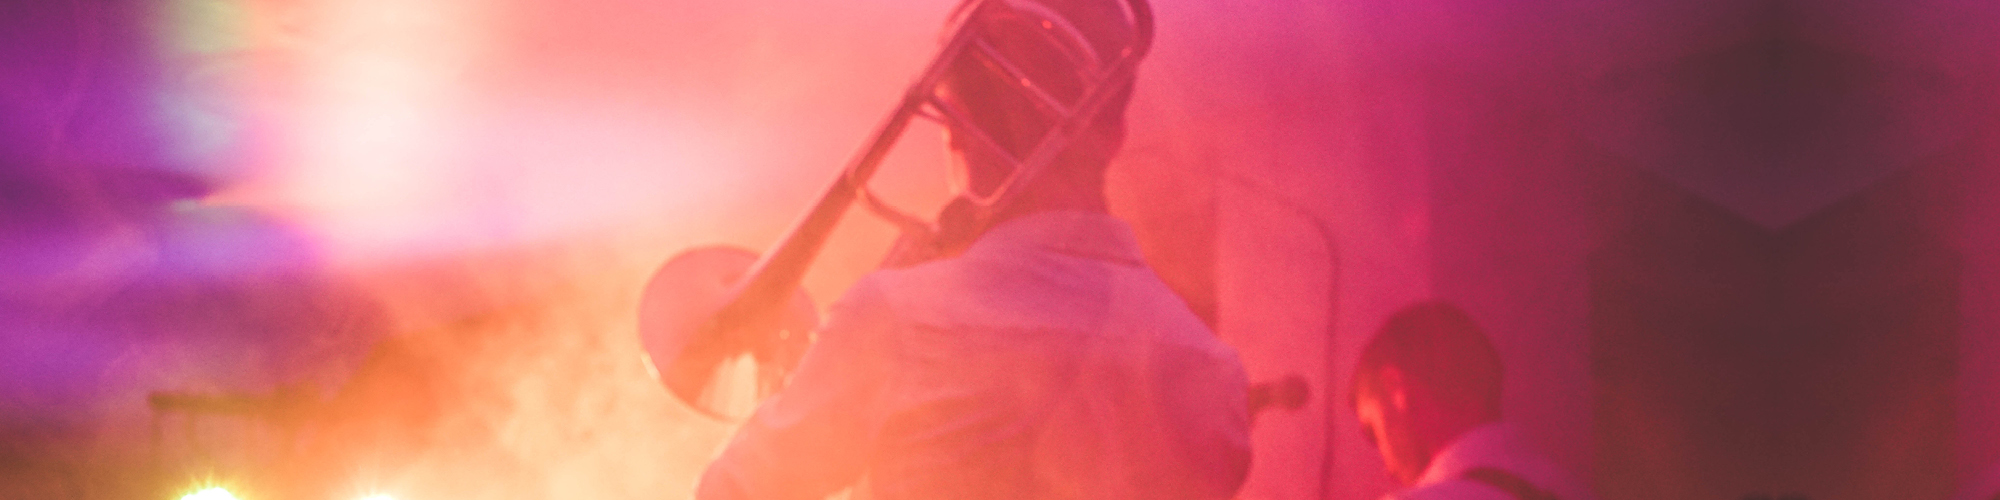 Tunnelmallinen punasävyinen kuva trumpetinsoittajan takaa